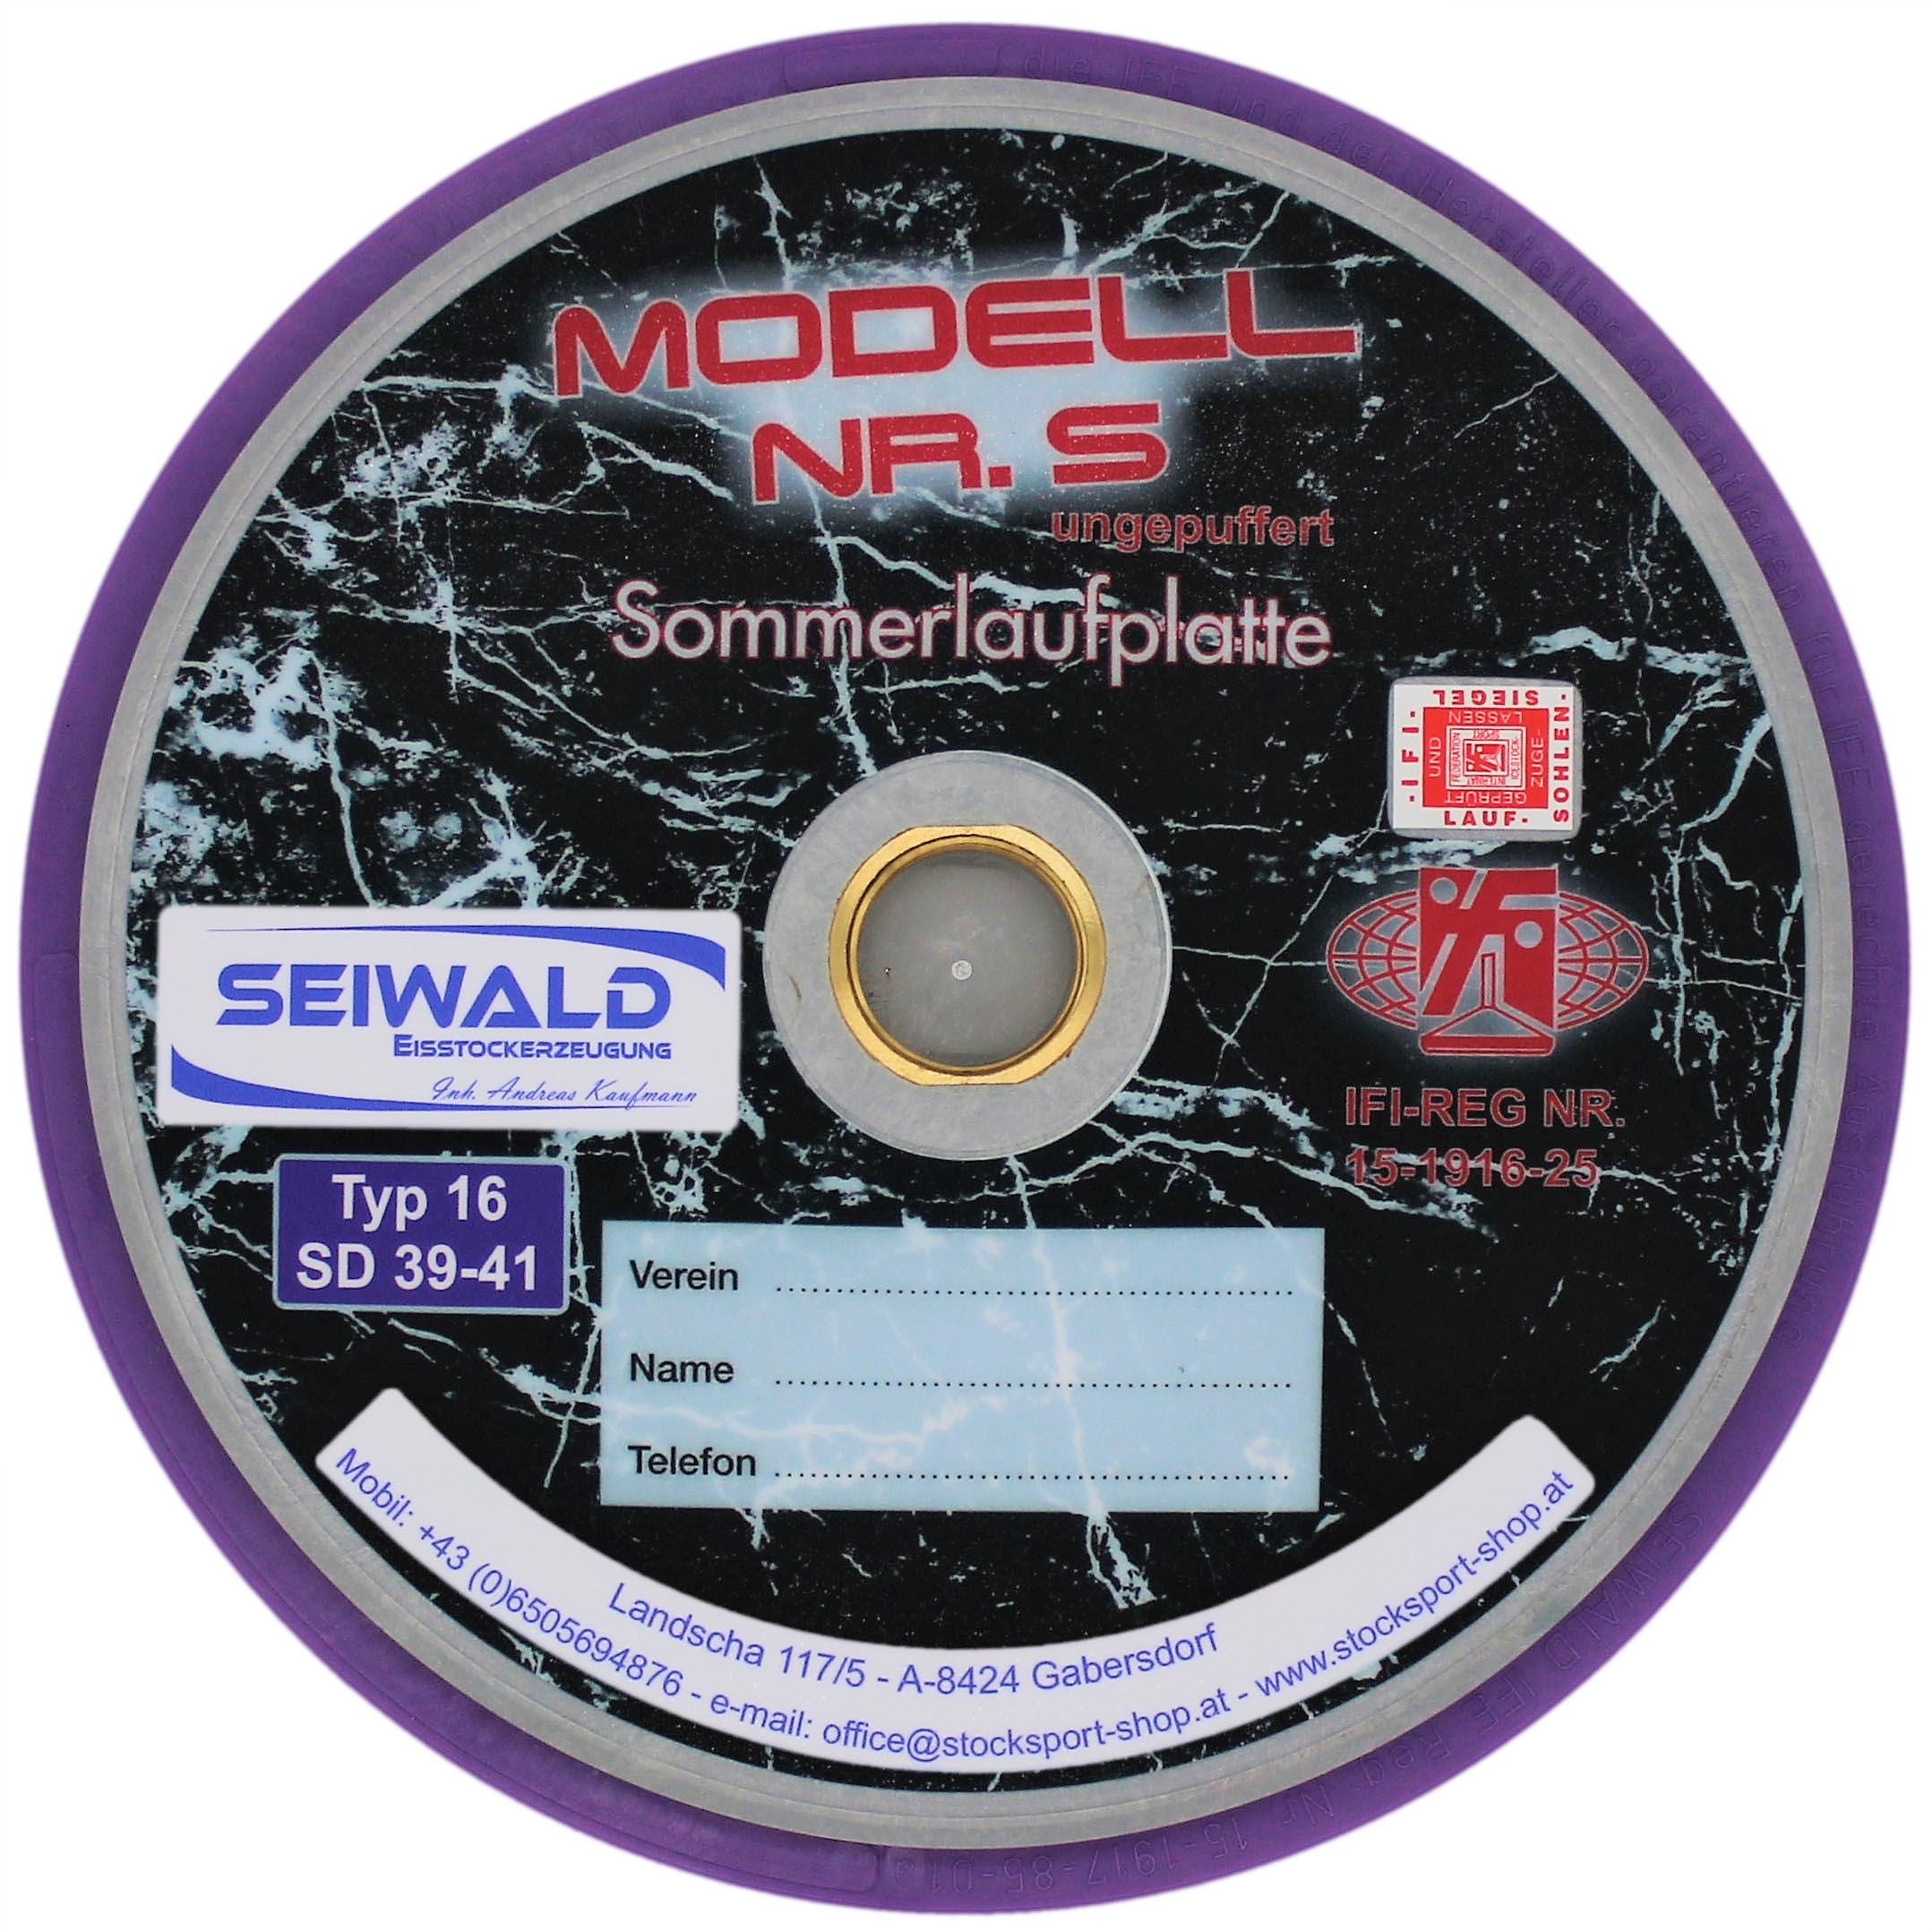 SEIWALD Modell 5 Lila verschraubt / Schnellere Mass und Stockplatte